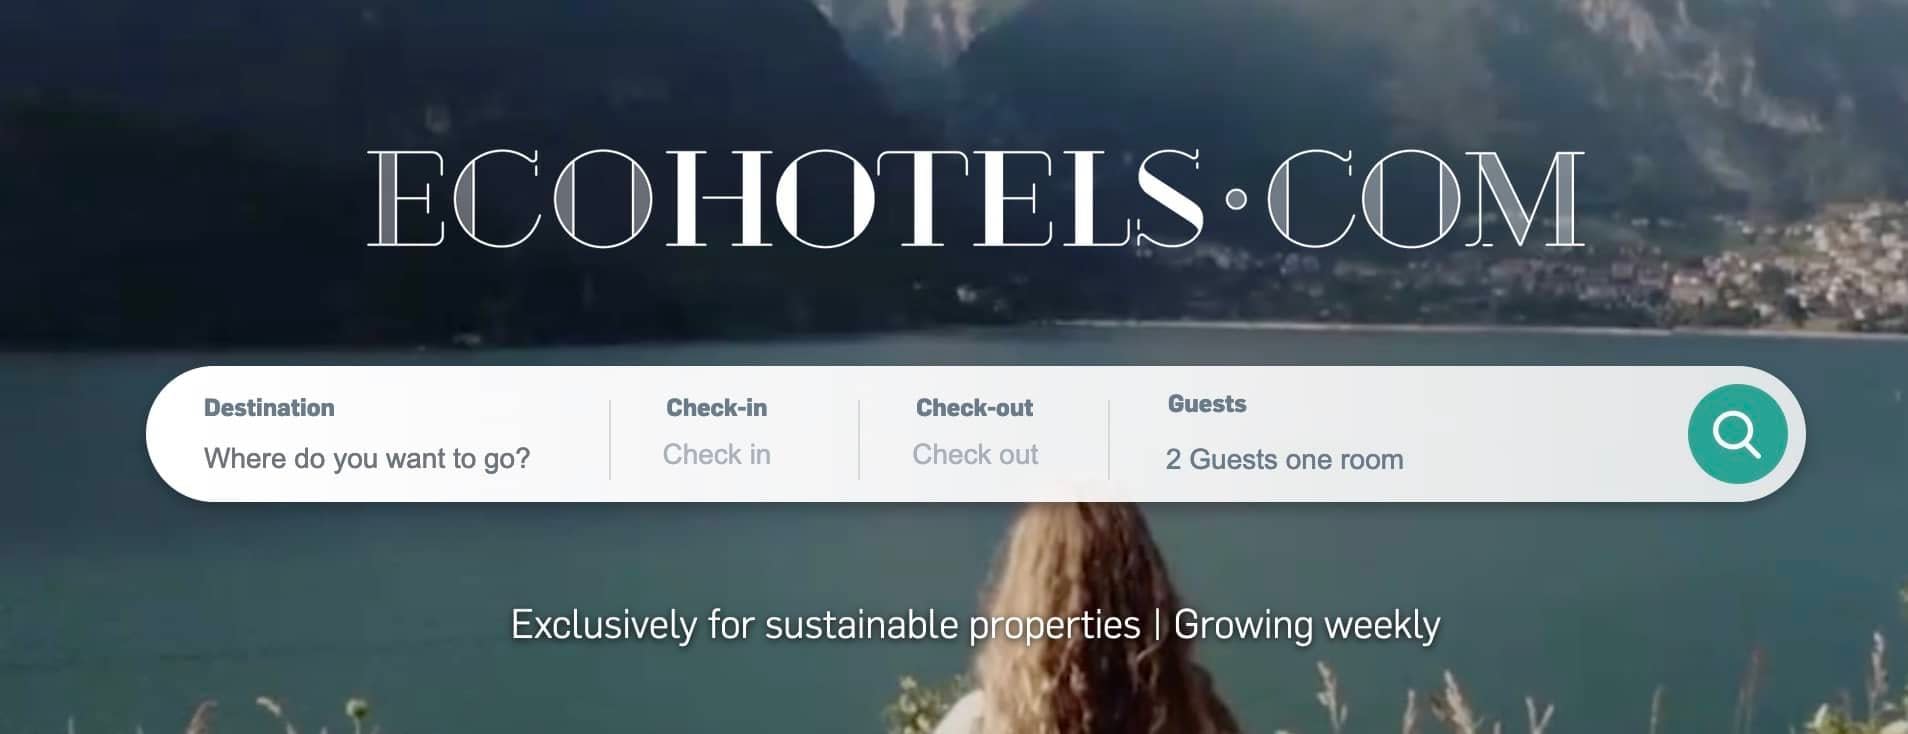 EcoHotels.com main website